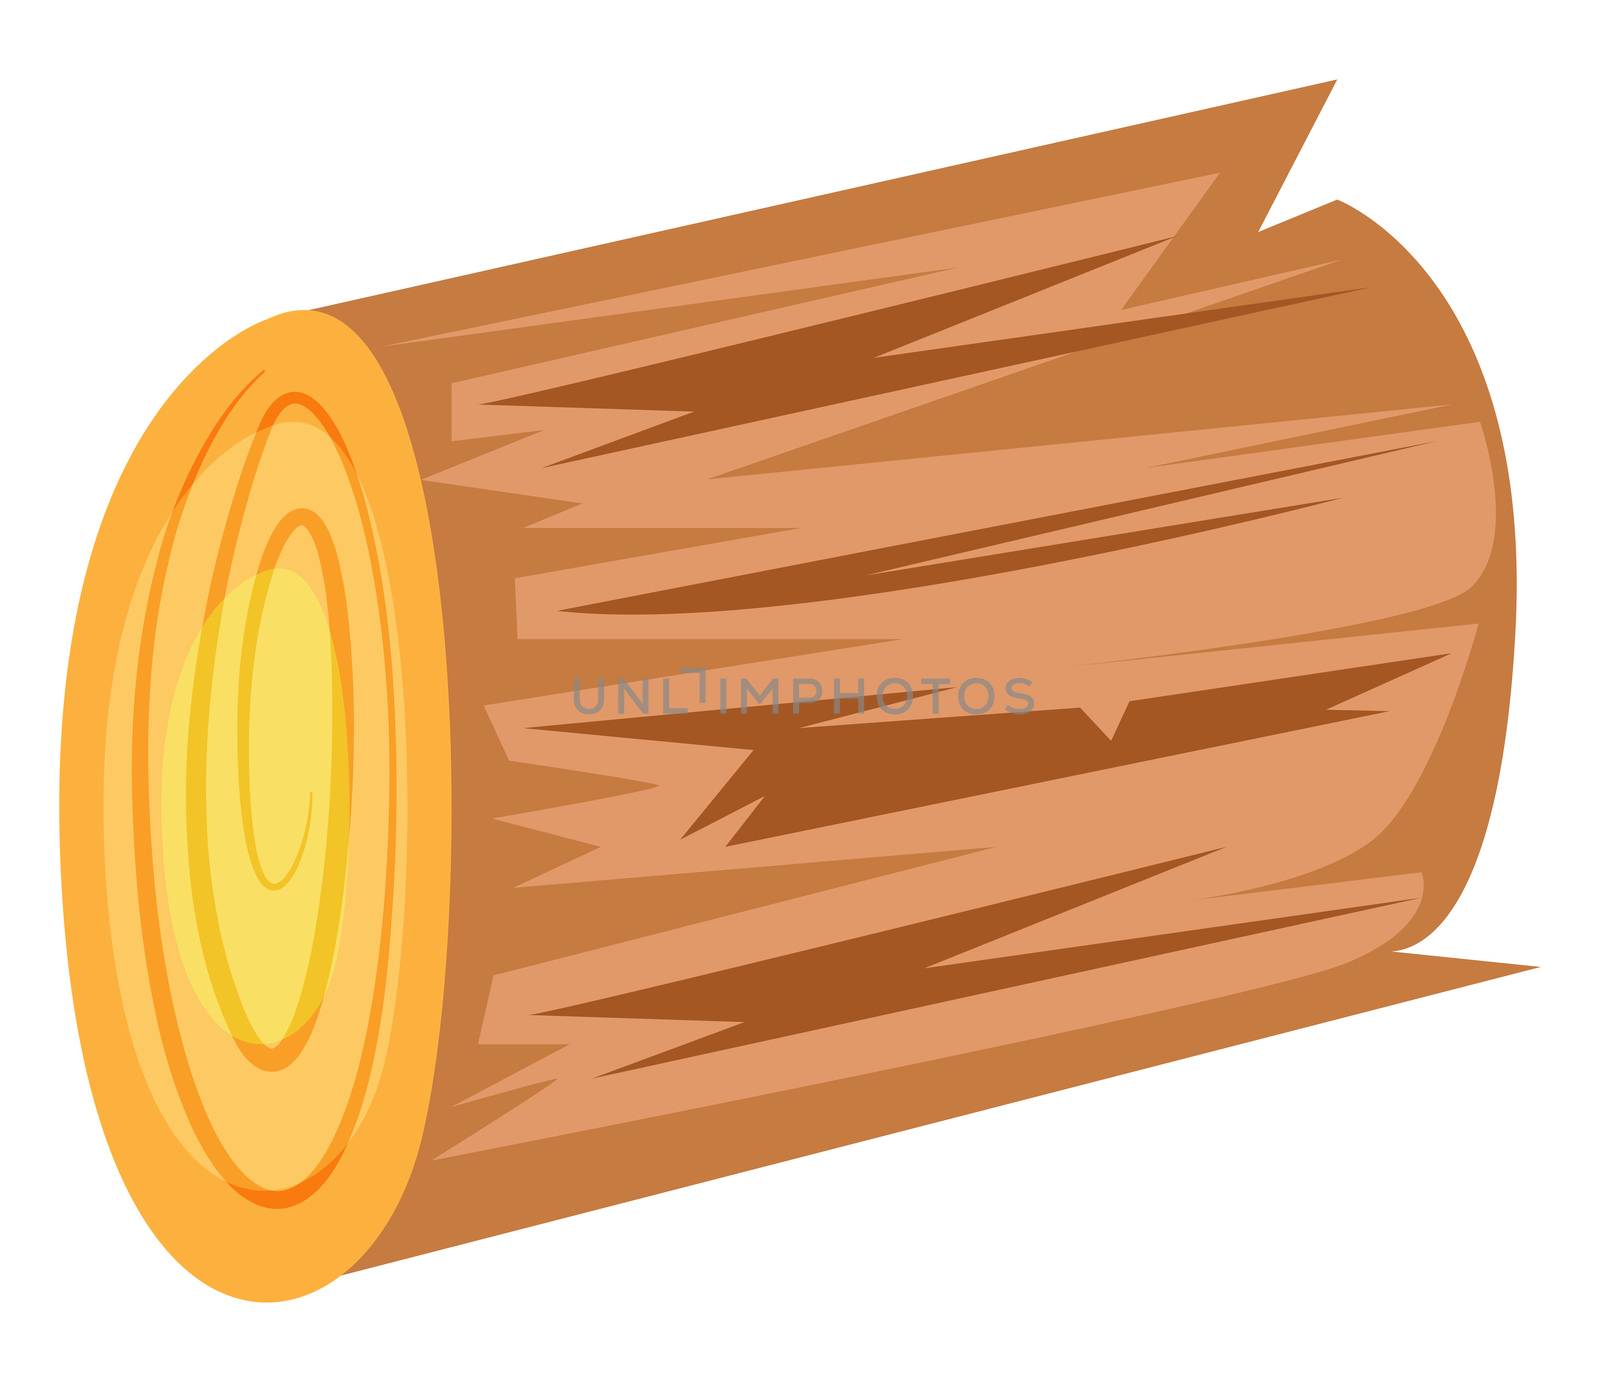 Wooden log, illustration, vector on white background by Morphart